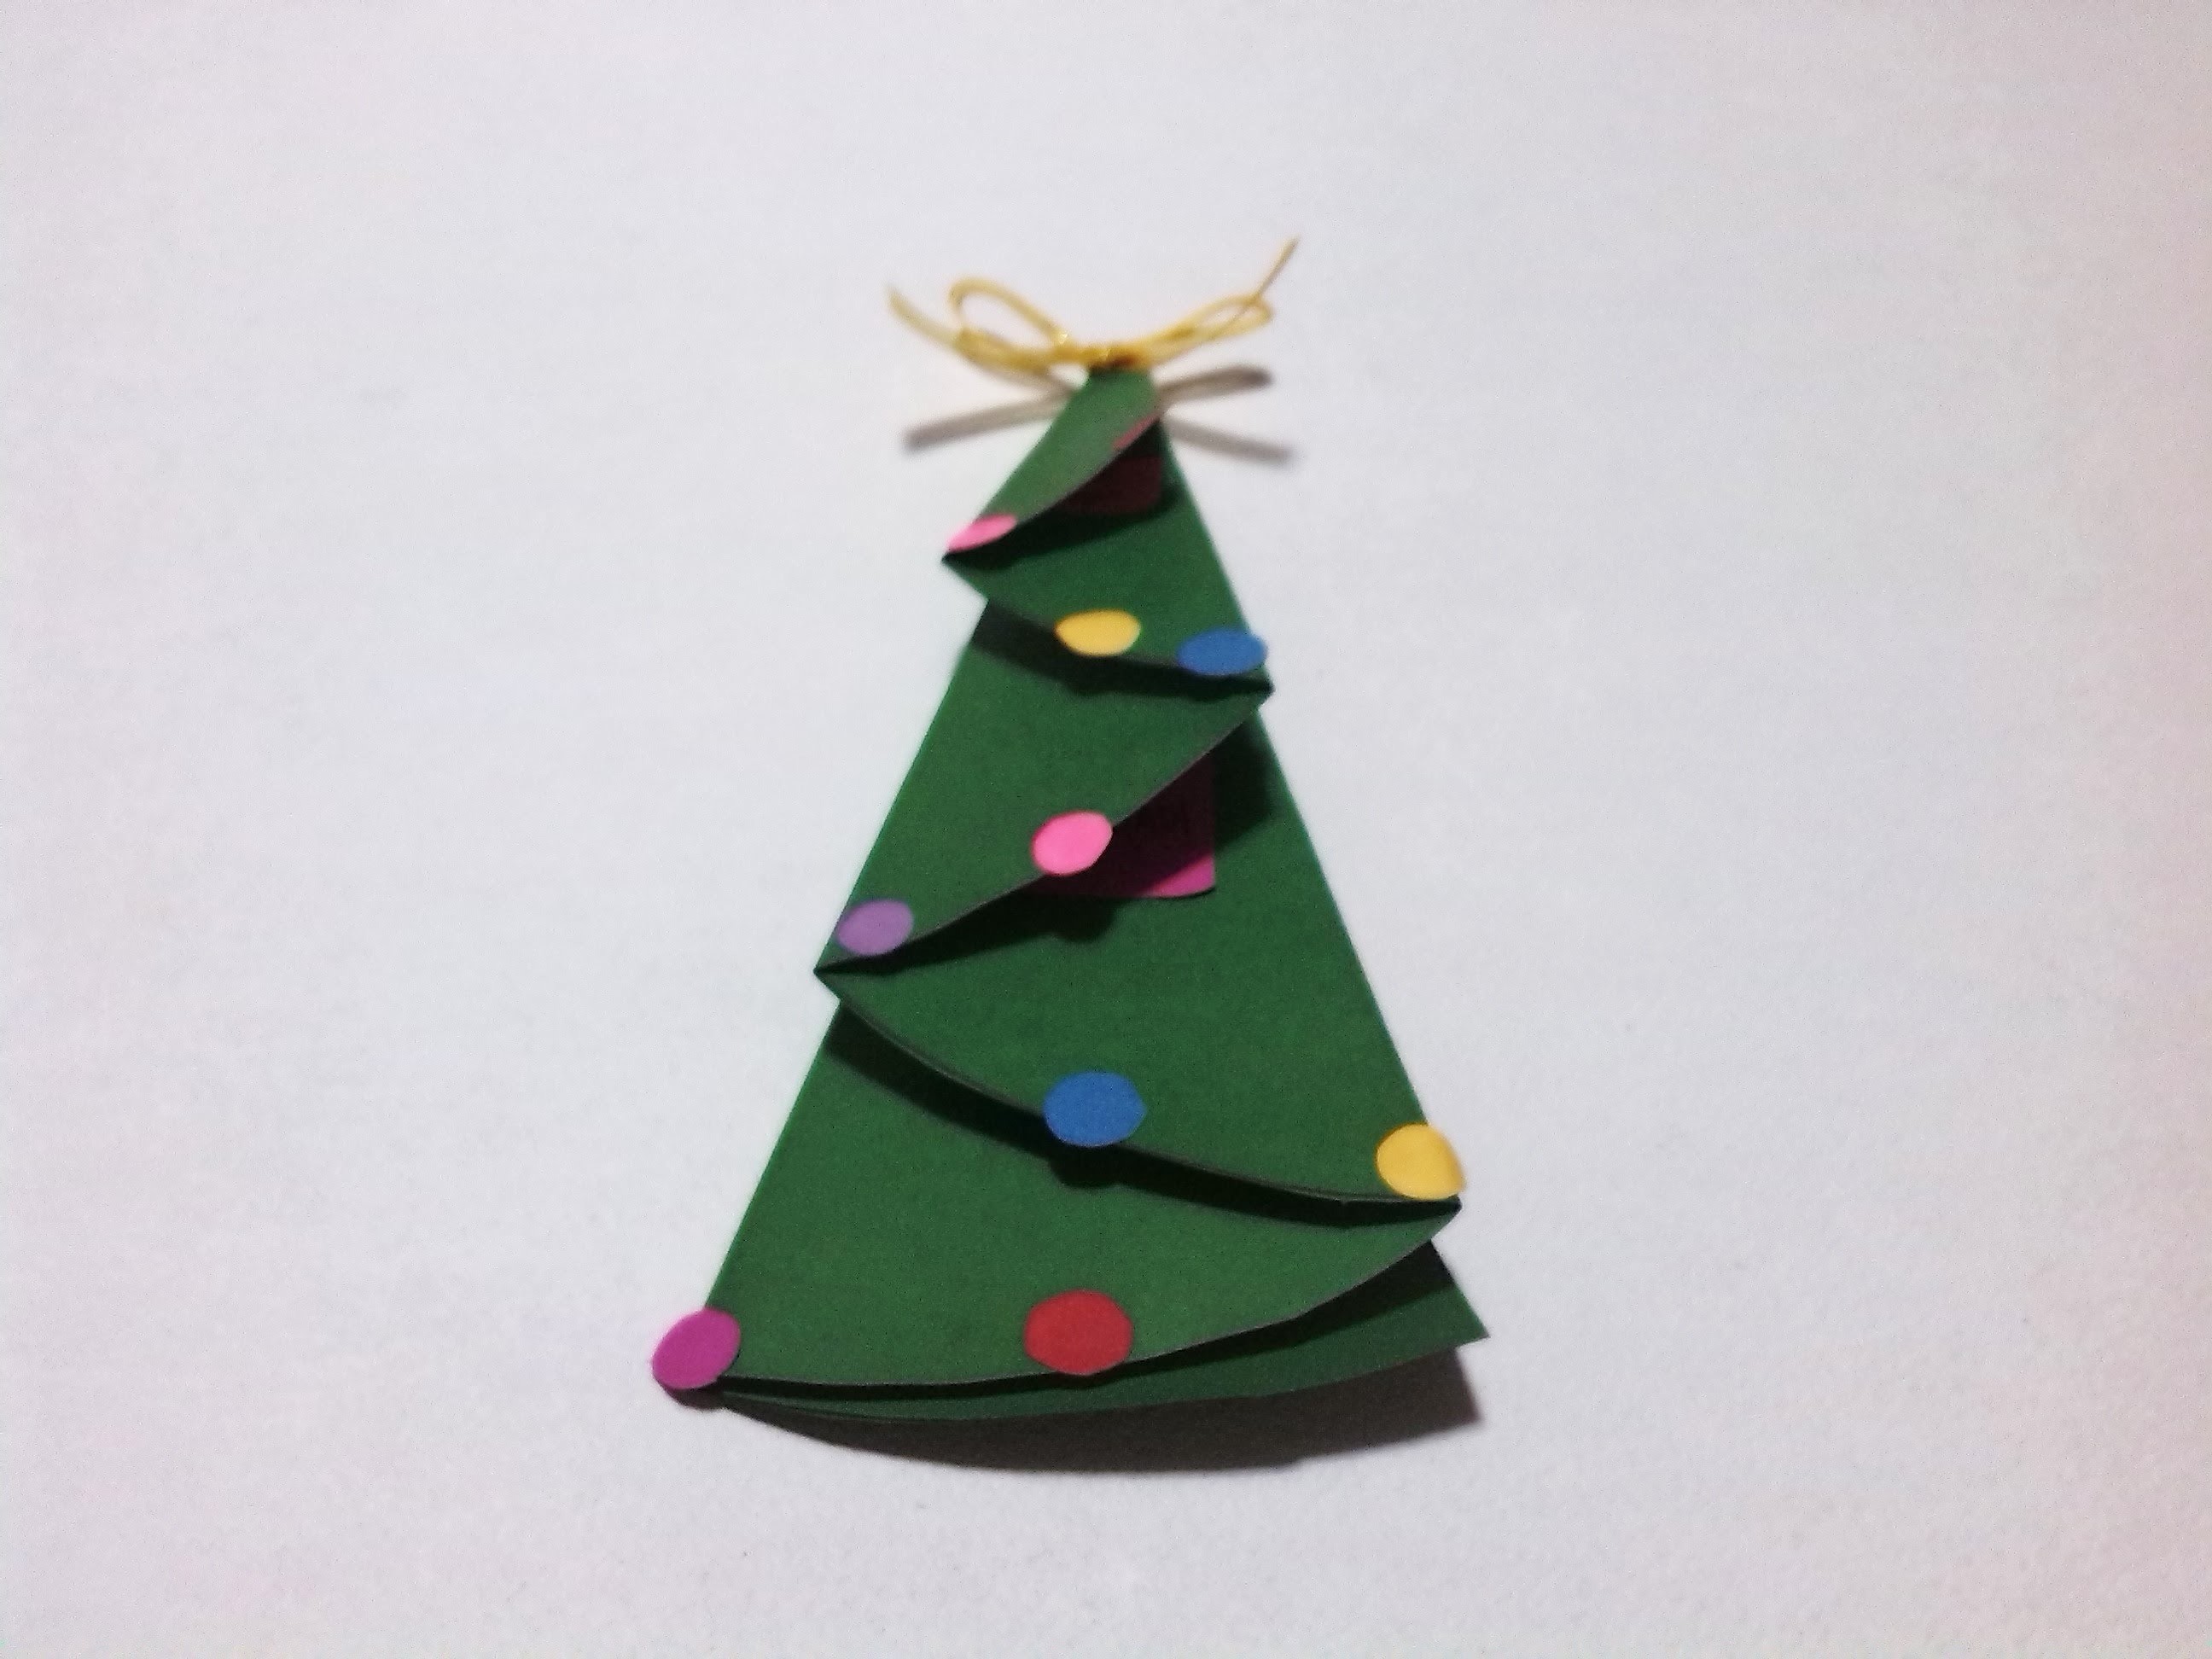 Navidad: Como doblar una carta en forma de pino fácil (origami)